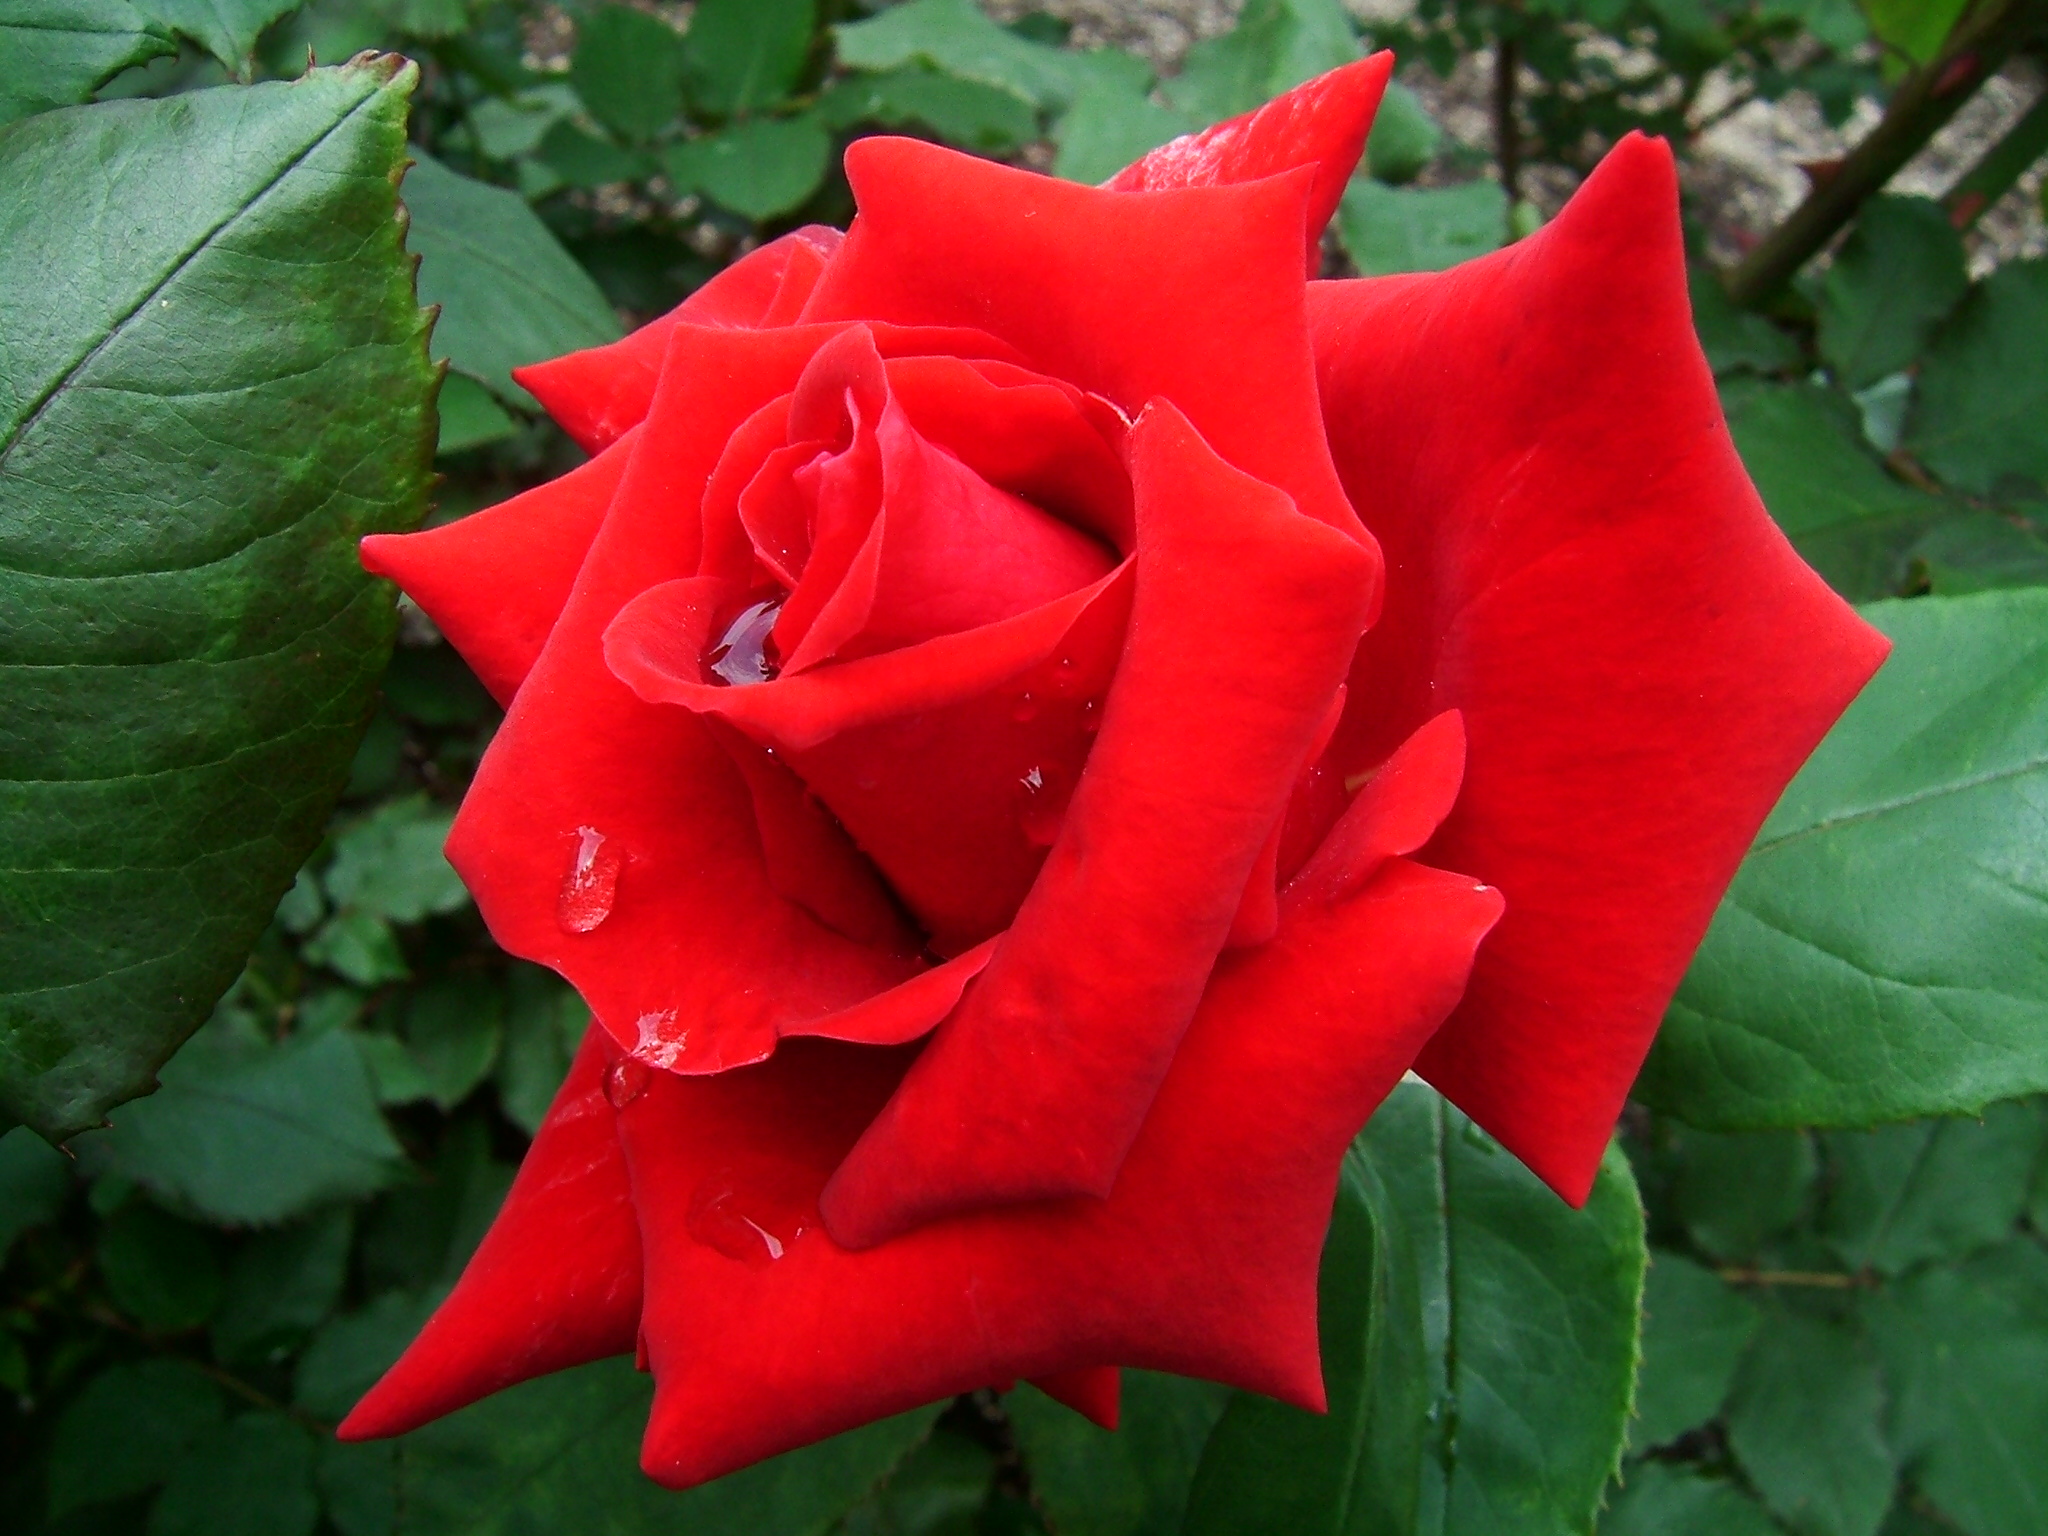 Hình ảnh cây hoa hồng đỏ